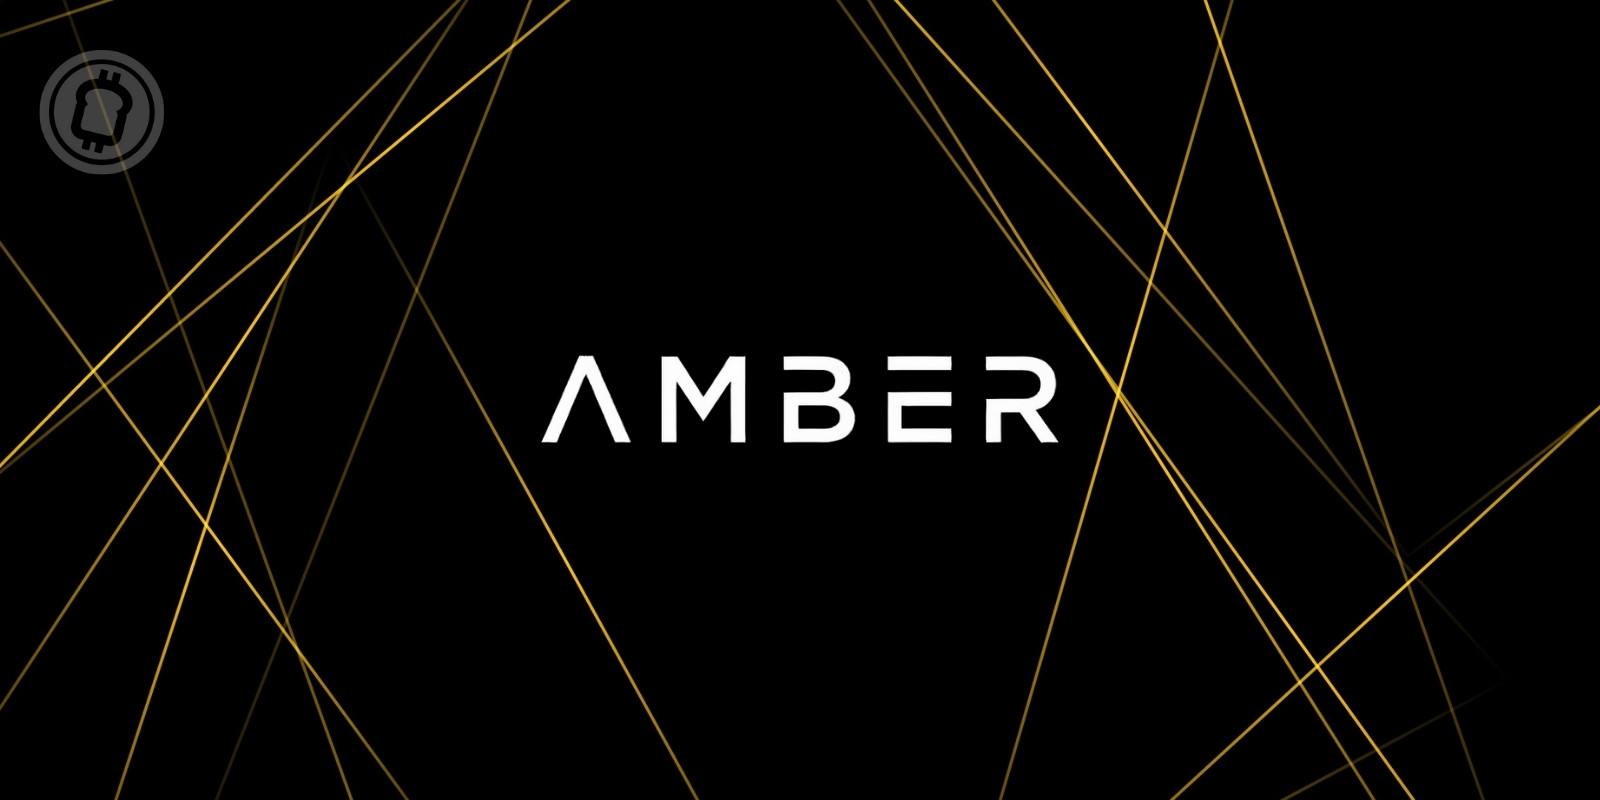 Amber Group voit sa valorisation atteindre 3,5 milliards de dollars après une nouvelle levée de fonds